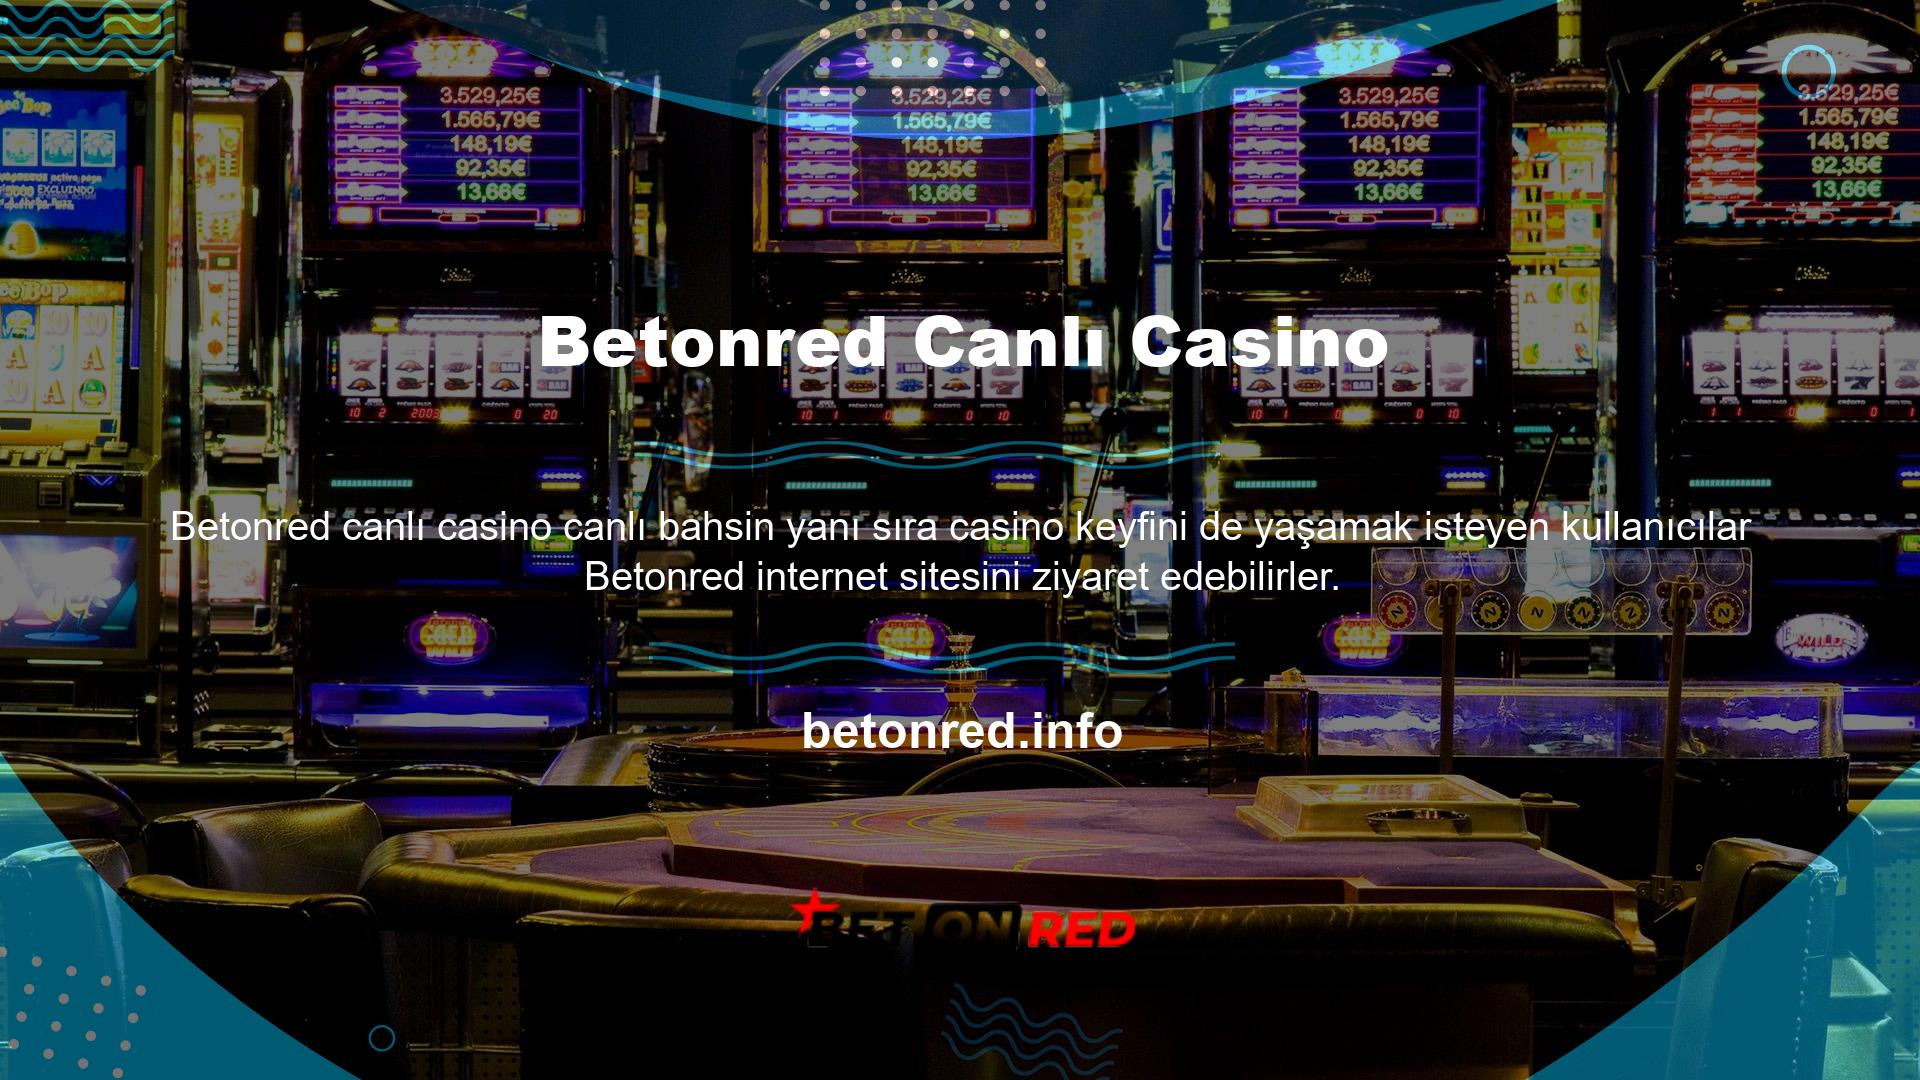 Genel olarak, canlı casino kurallarına uyduğunuz sürece canlı olarak kazanmaya devam edebilirsiniz